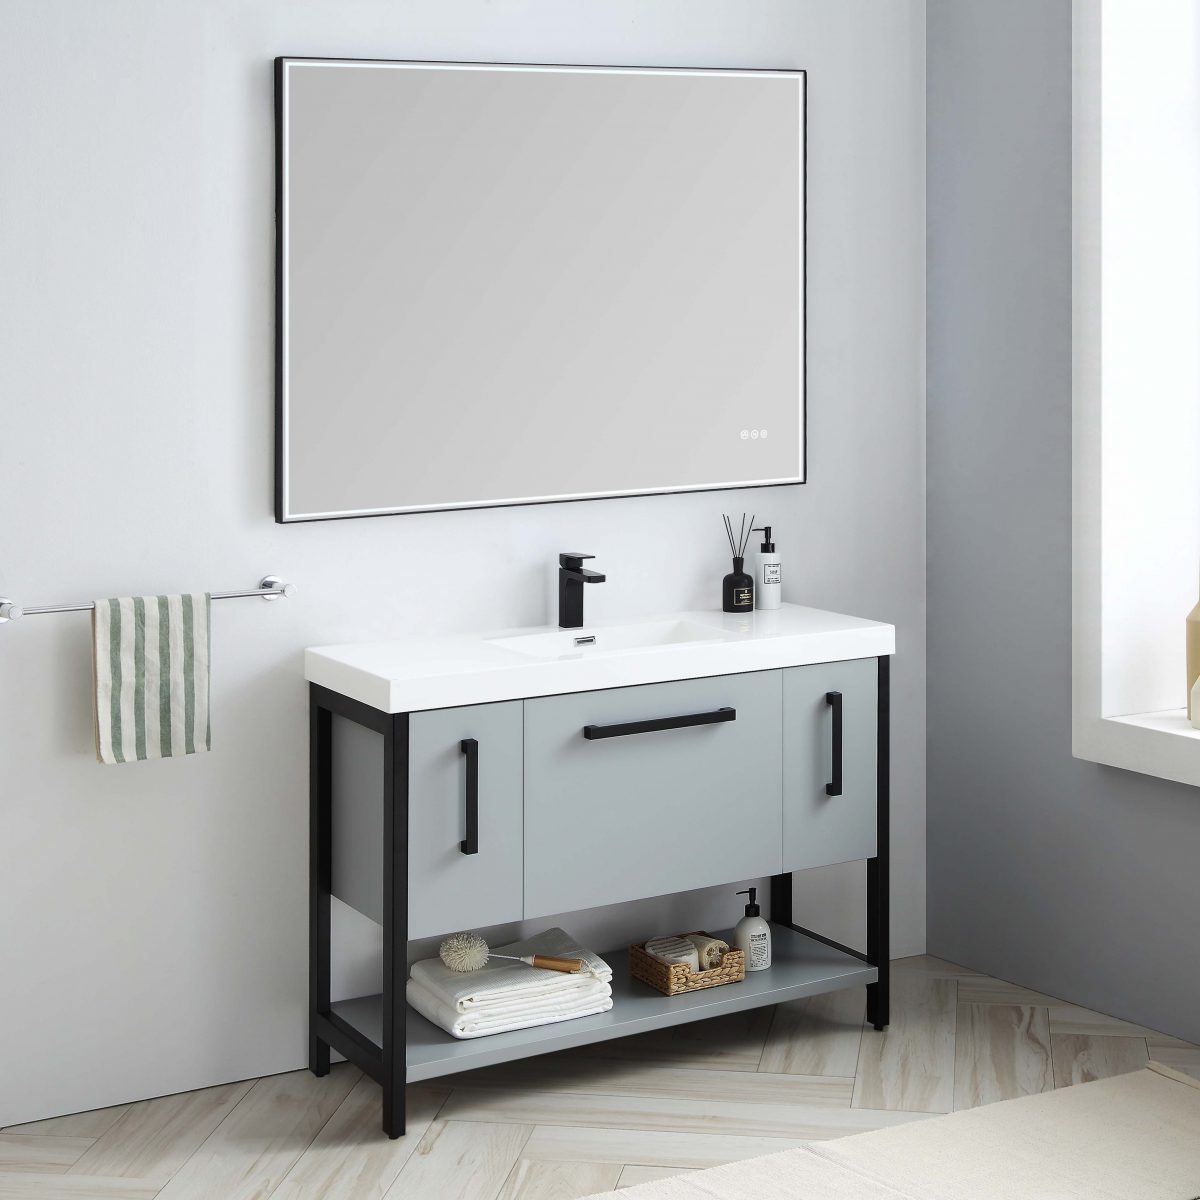 Riga 48" Bathroom Vanity  #size_48"  #color_metal grey